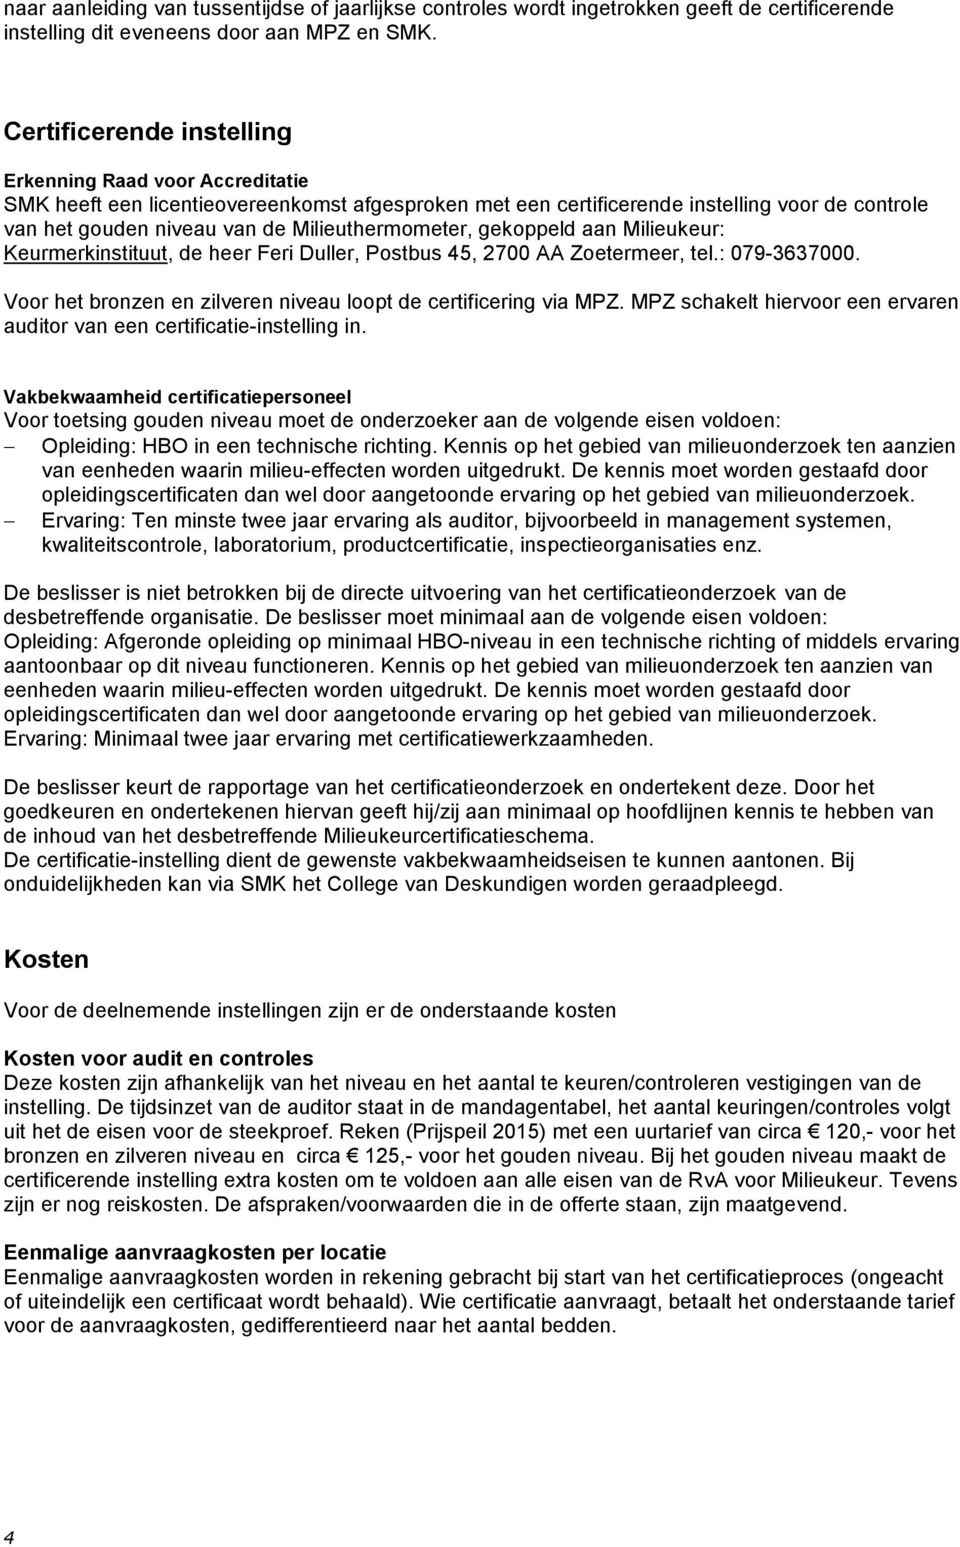 Milieuthermometer, gekoppeld aan Milieukeur: Keurmerkinstituut, de heer Feri Duller, Postbus 45, 2700 AA Zoetermeer, tel.: 079-3637000.